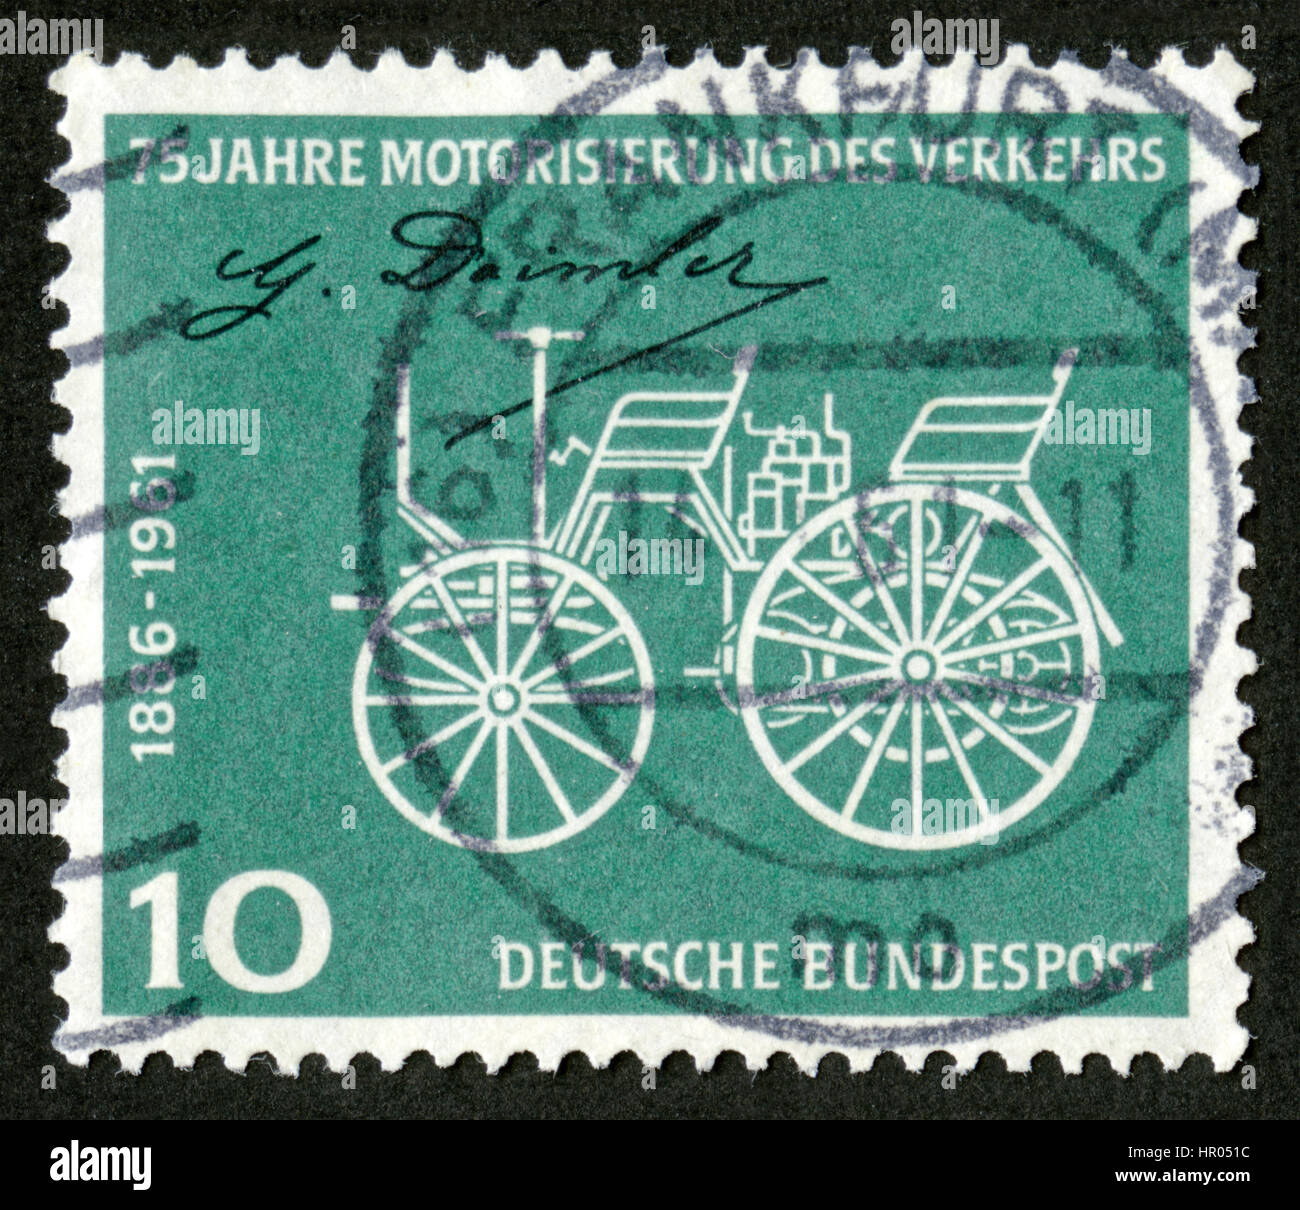 Germania francobolli, 75 anni di motorizzazione dei trasporti Foto Stock